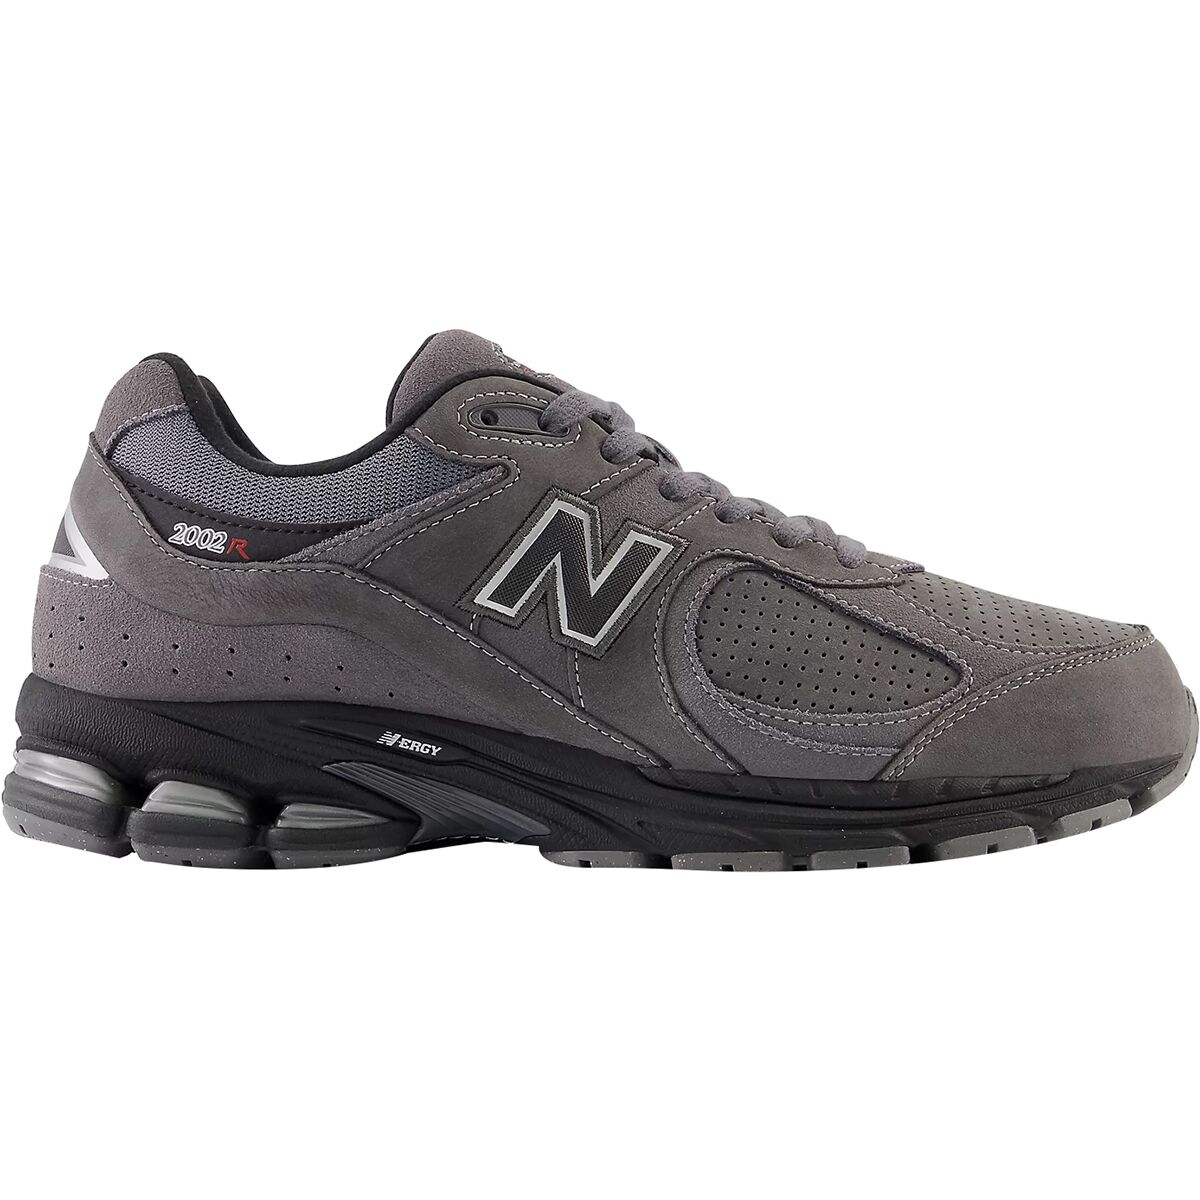 2002R Nubuck Shoe - Men's by New Balance | US-Parks.com